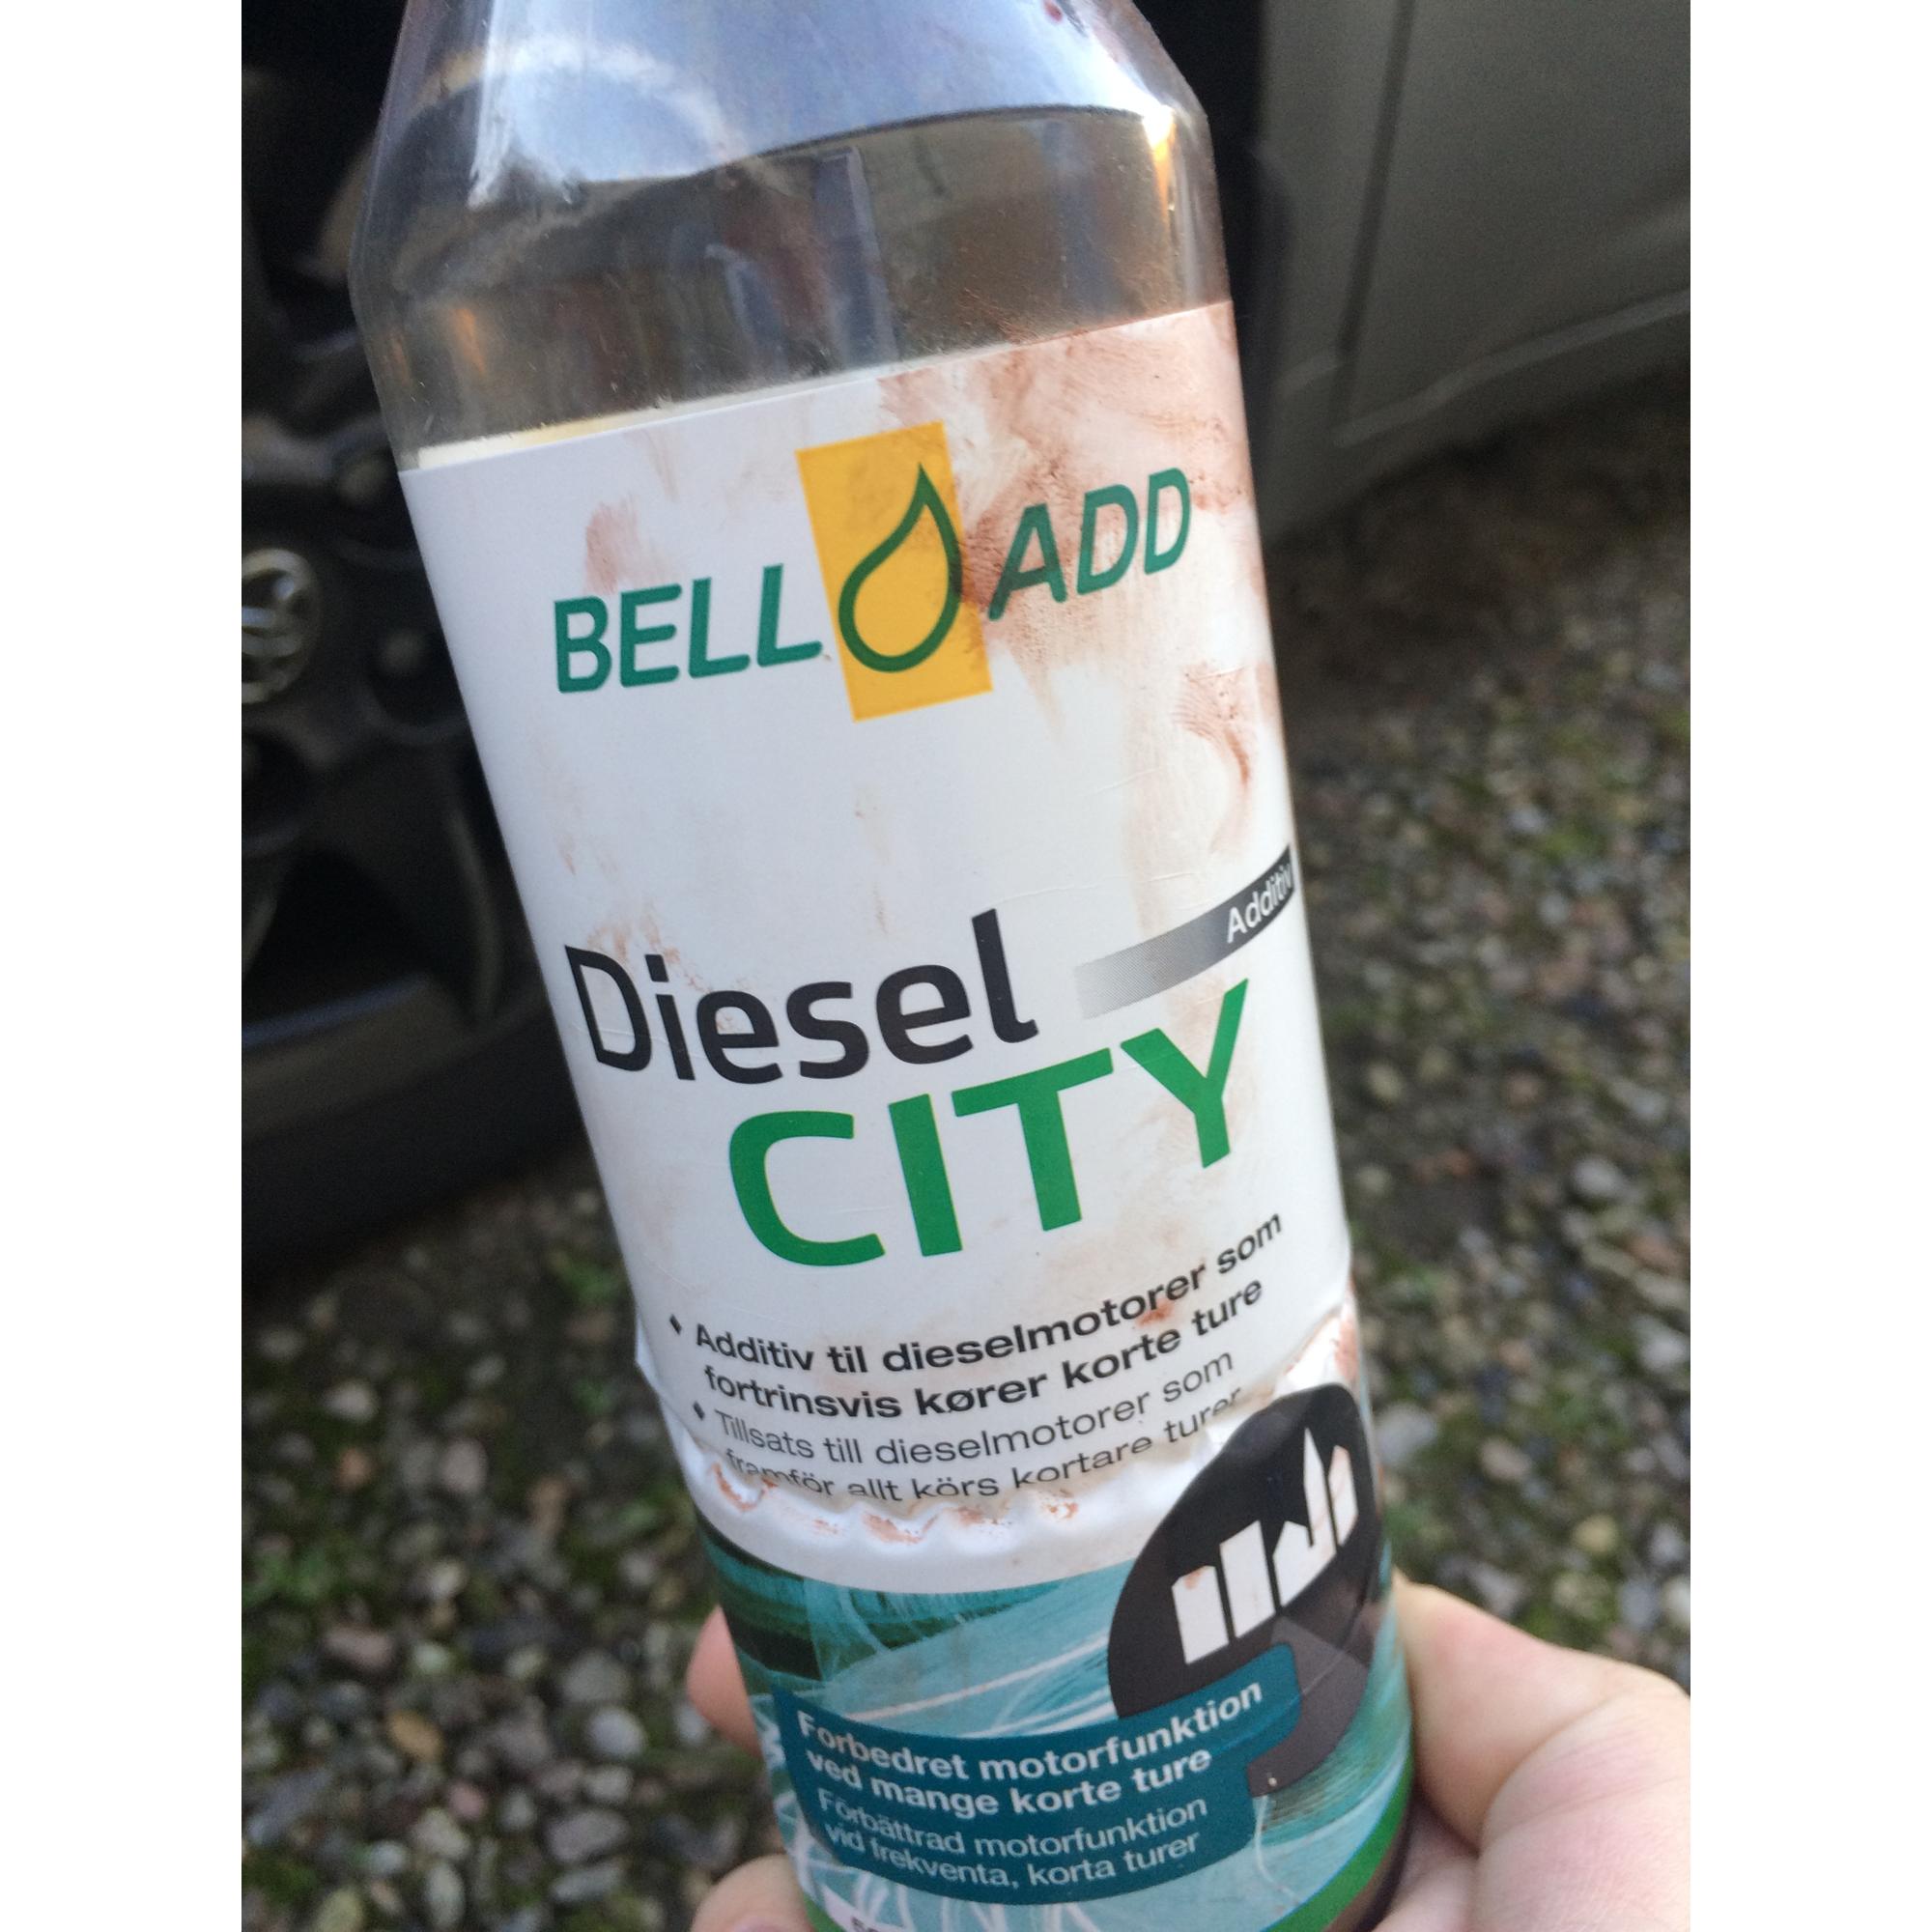 Belladd Diesel Safe Additiv, Kenns Biler og Både, Autoværksted, Salg af  brugt bil og både